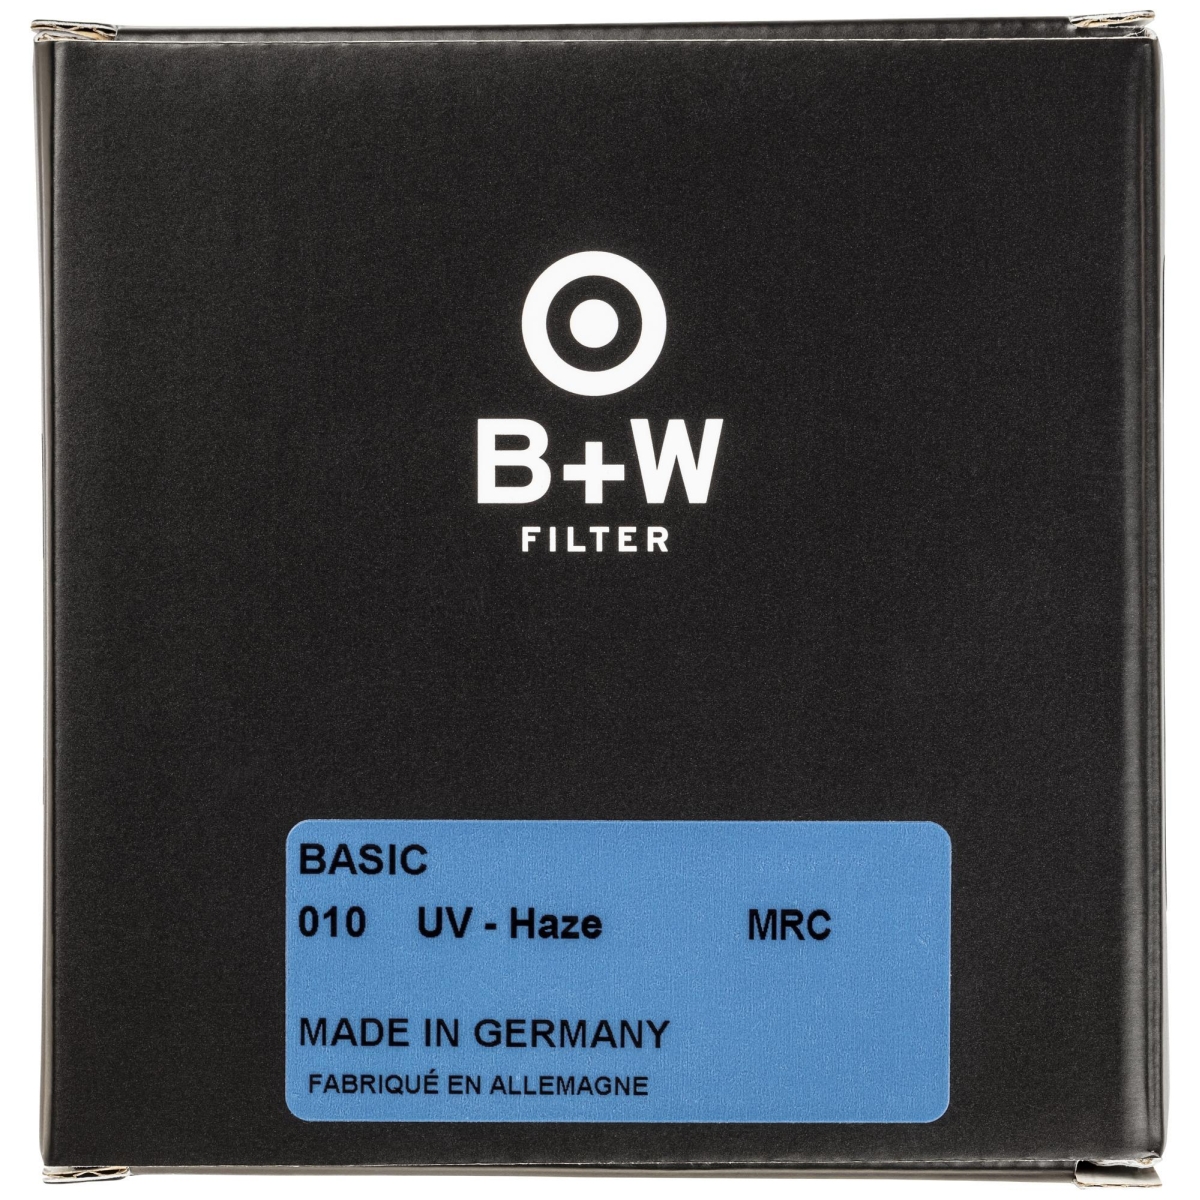 B+W UV 46 mm MRC Basic